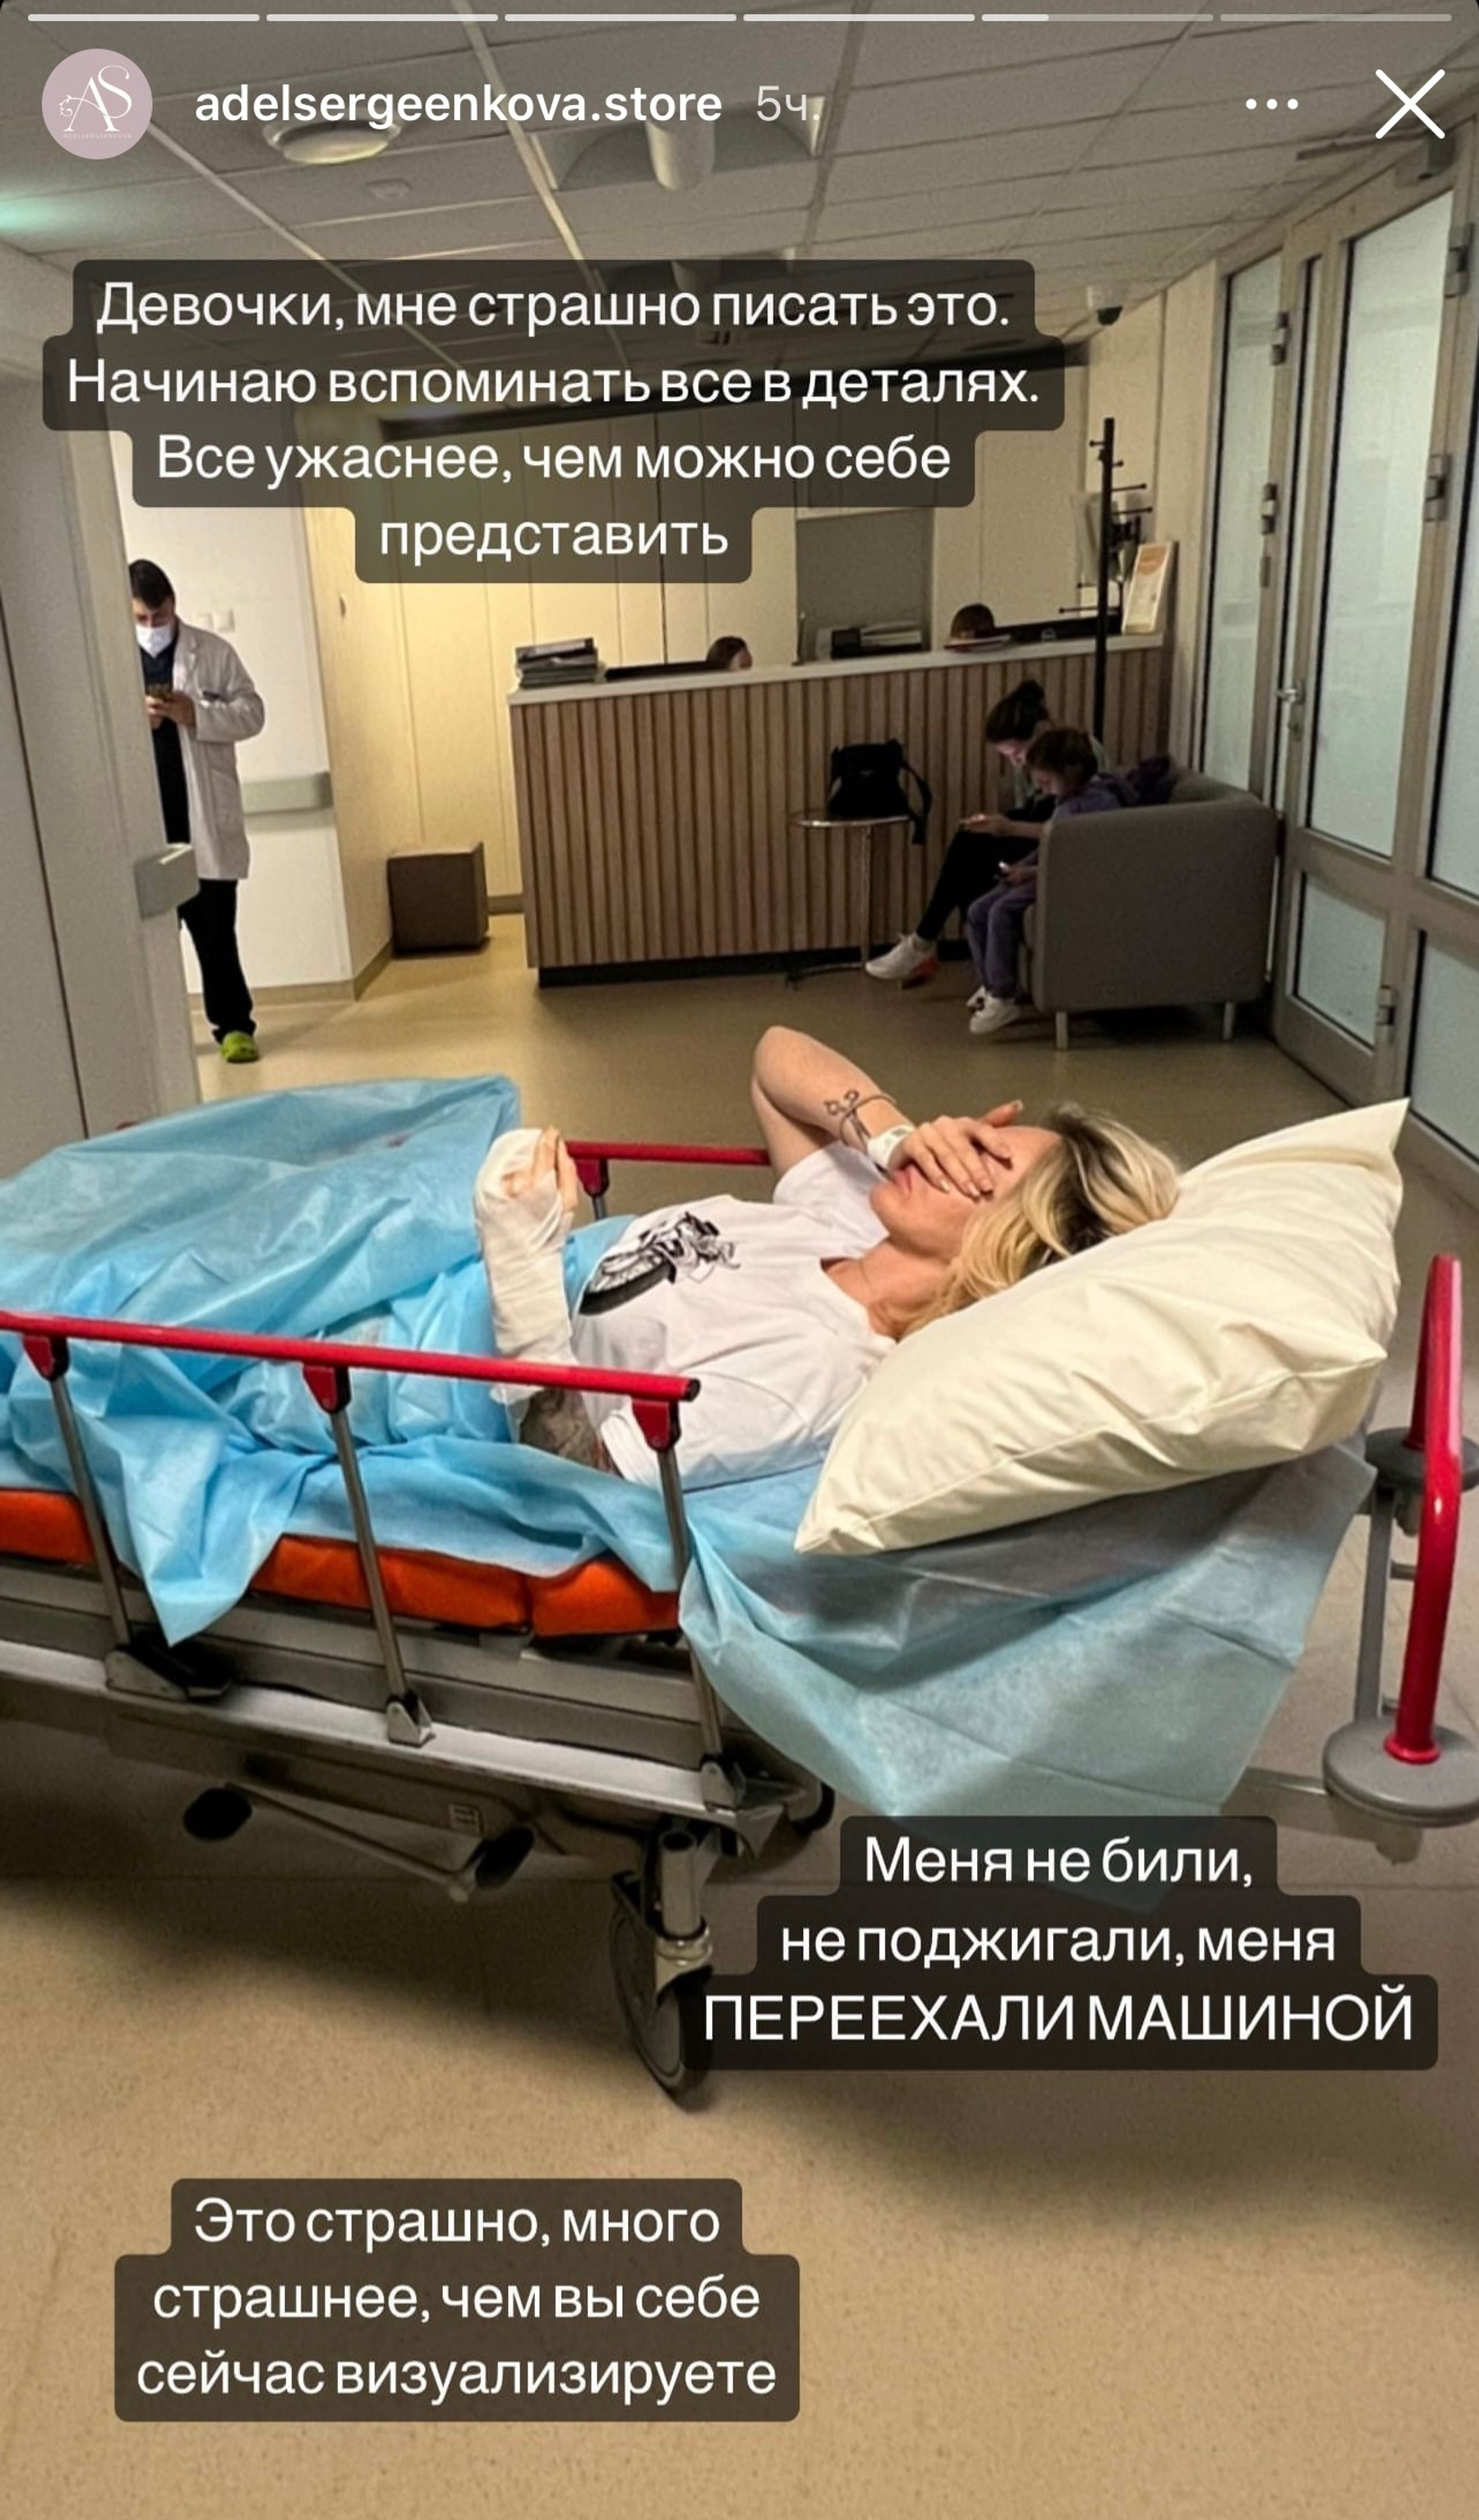 Адель Сергеенкова после аварии
Фото: Инстаграм (запрещен в РФ) @adelsergeenkova.store